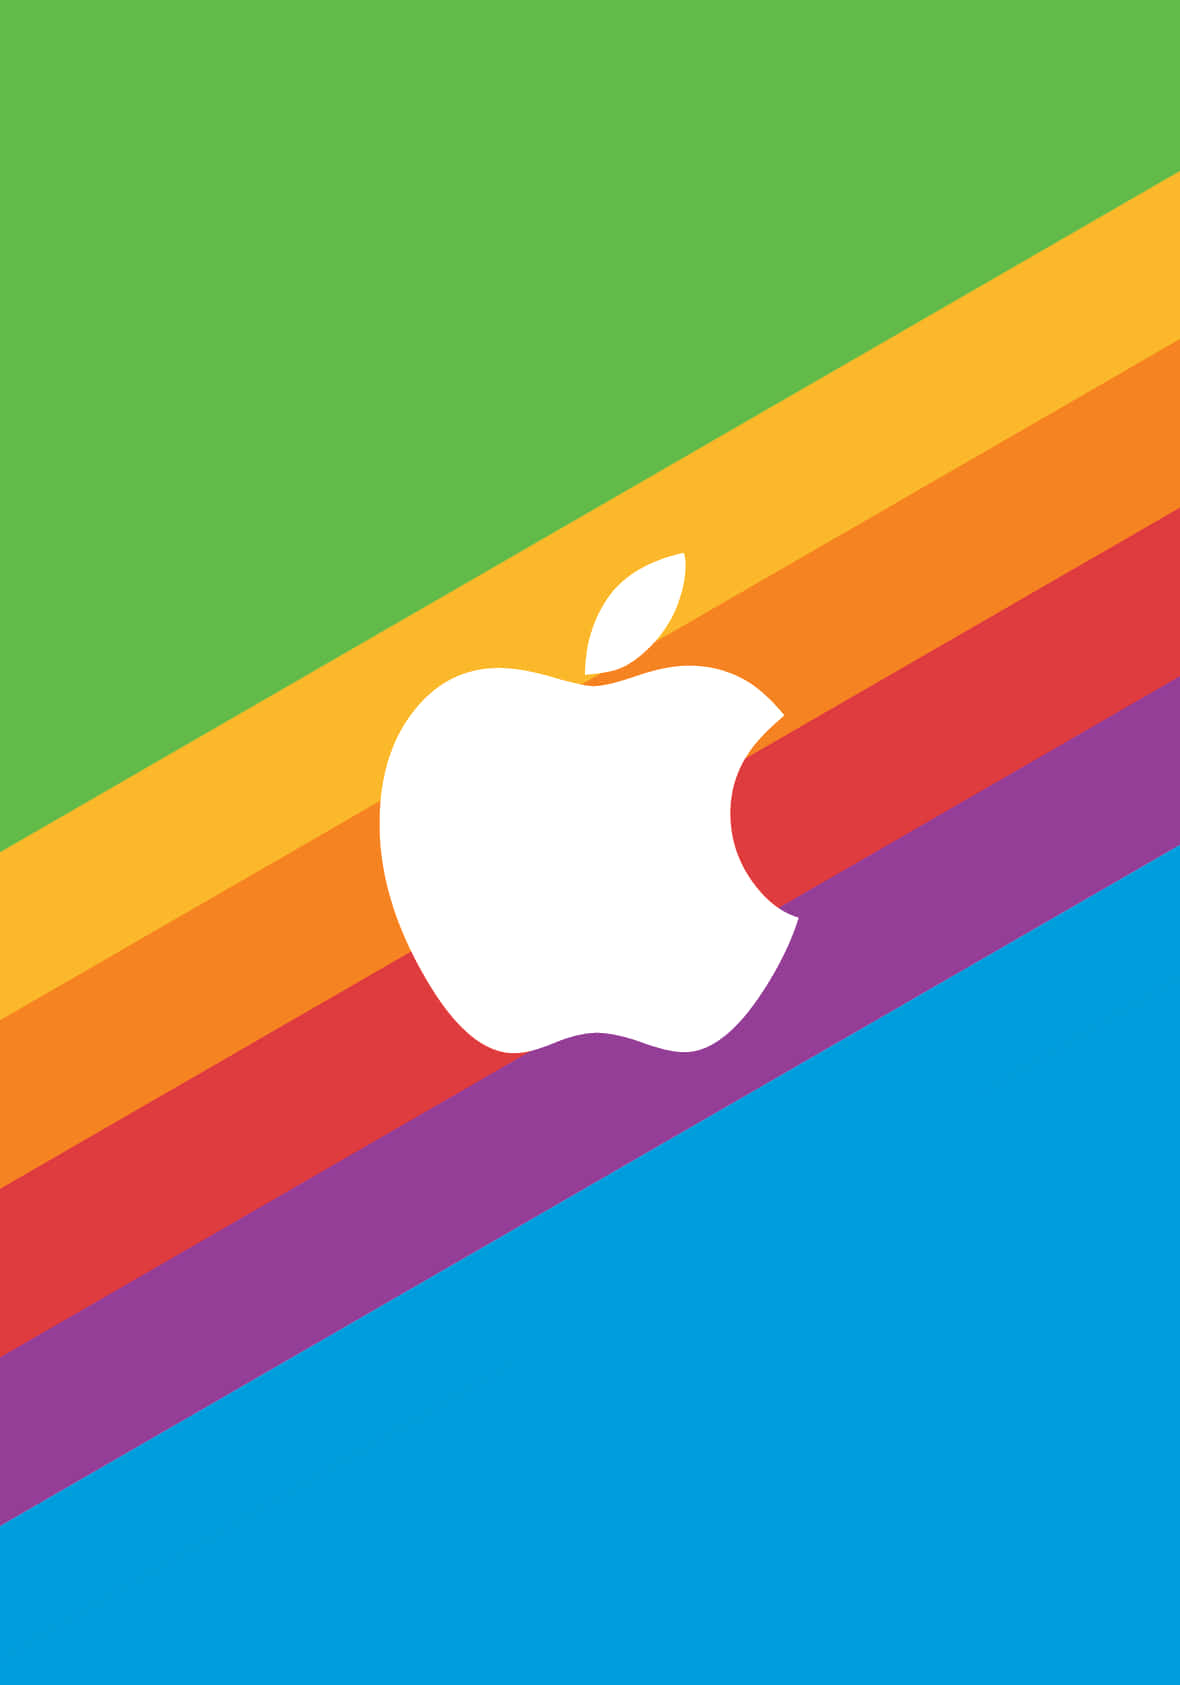 Et æble logo på en farverig baggrund. Wallpaper